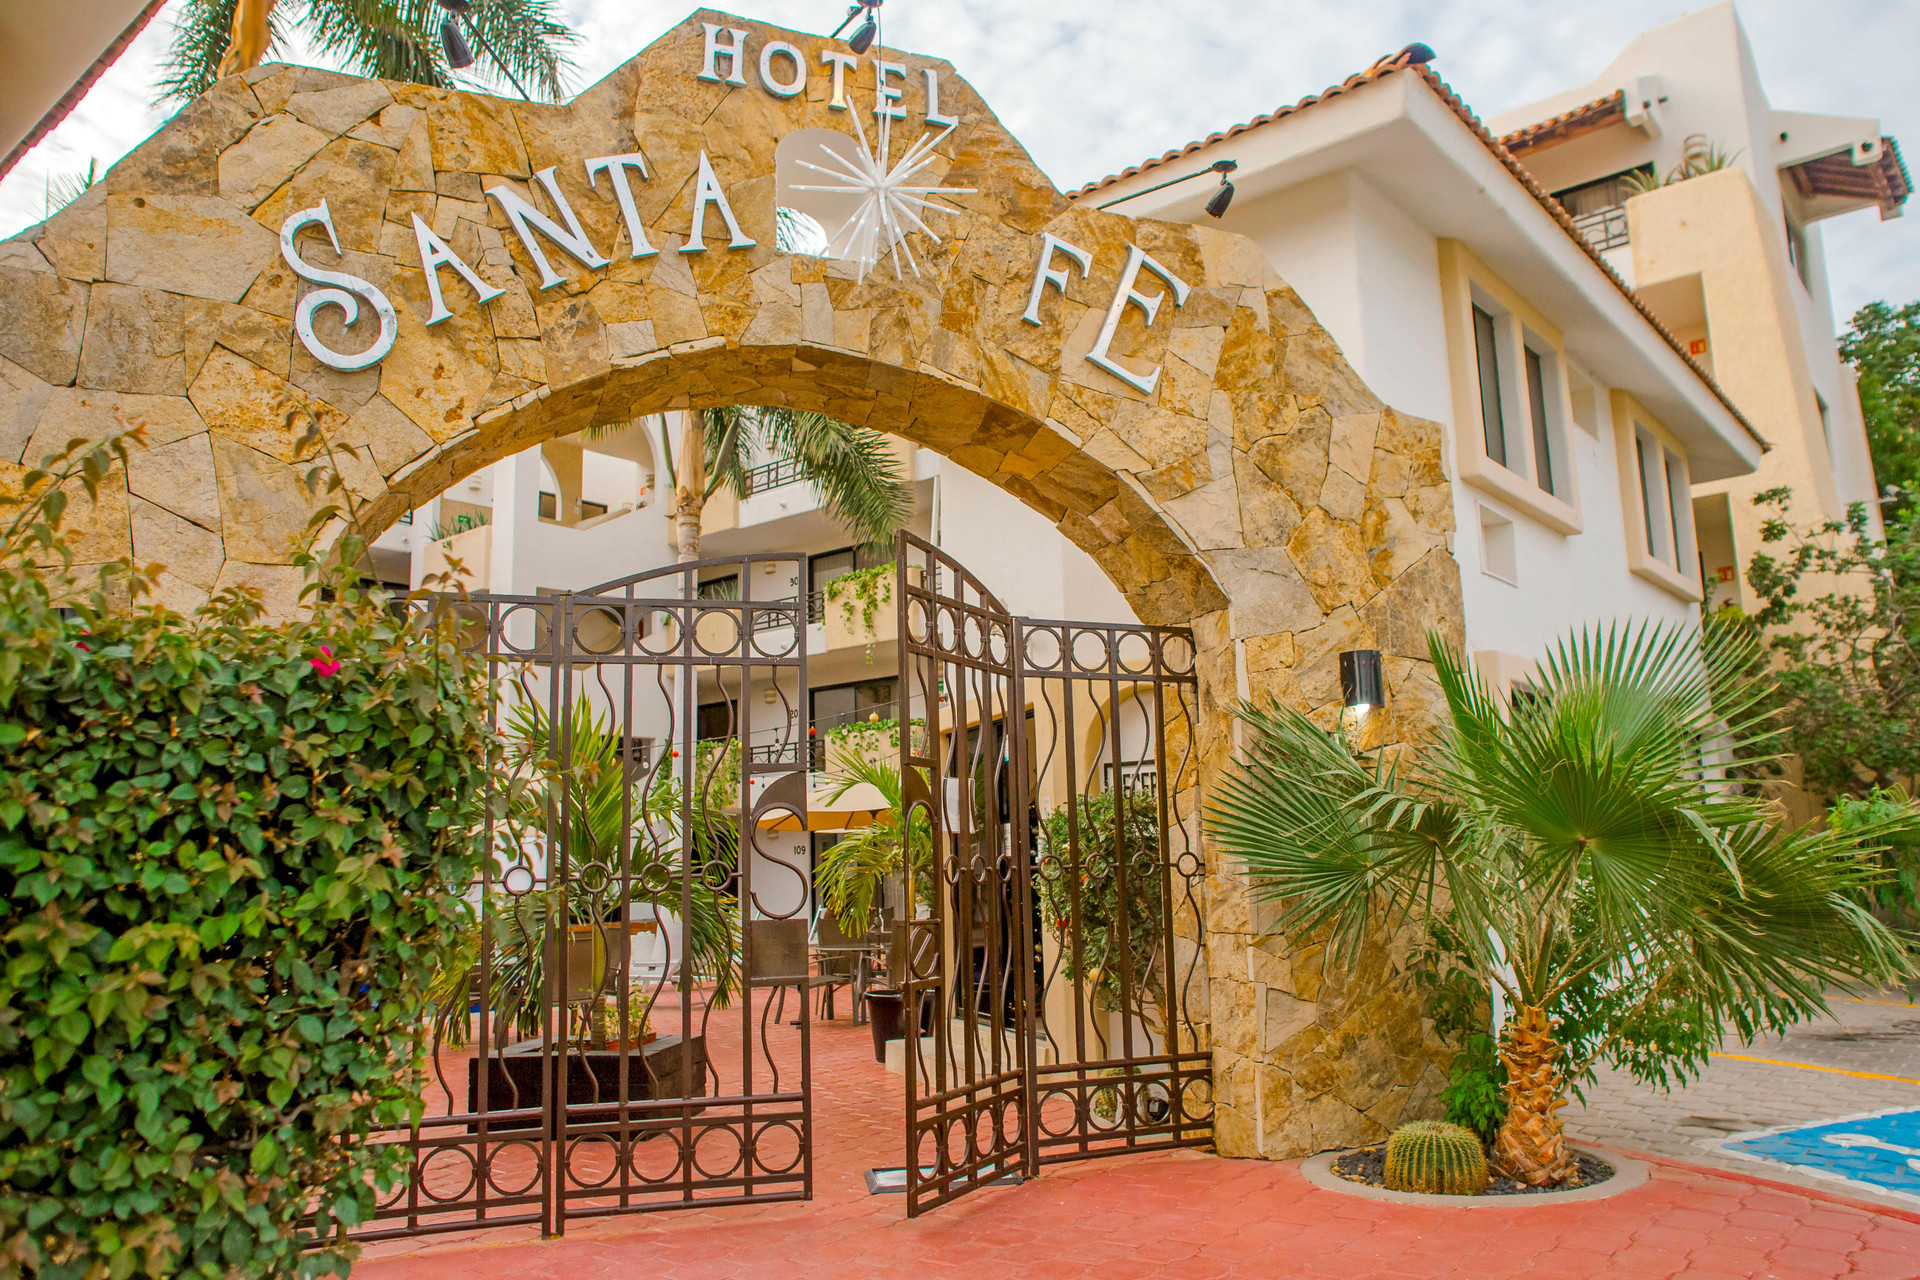 Santa Fe Los Cabos Hotel